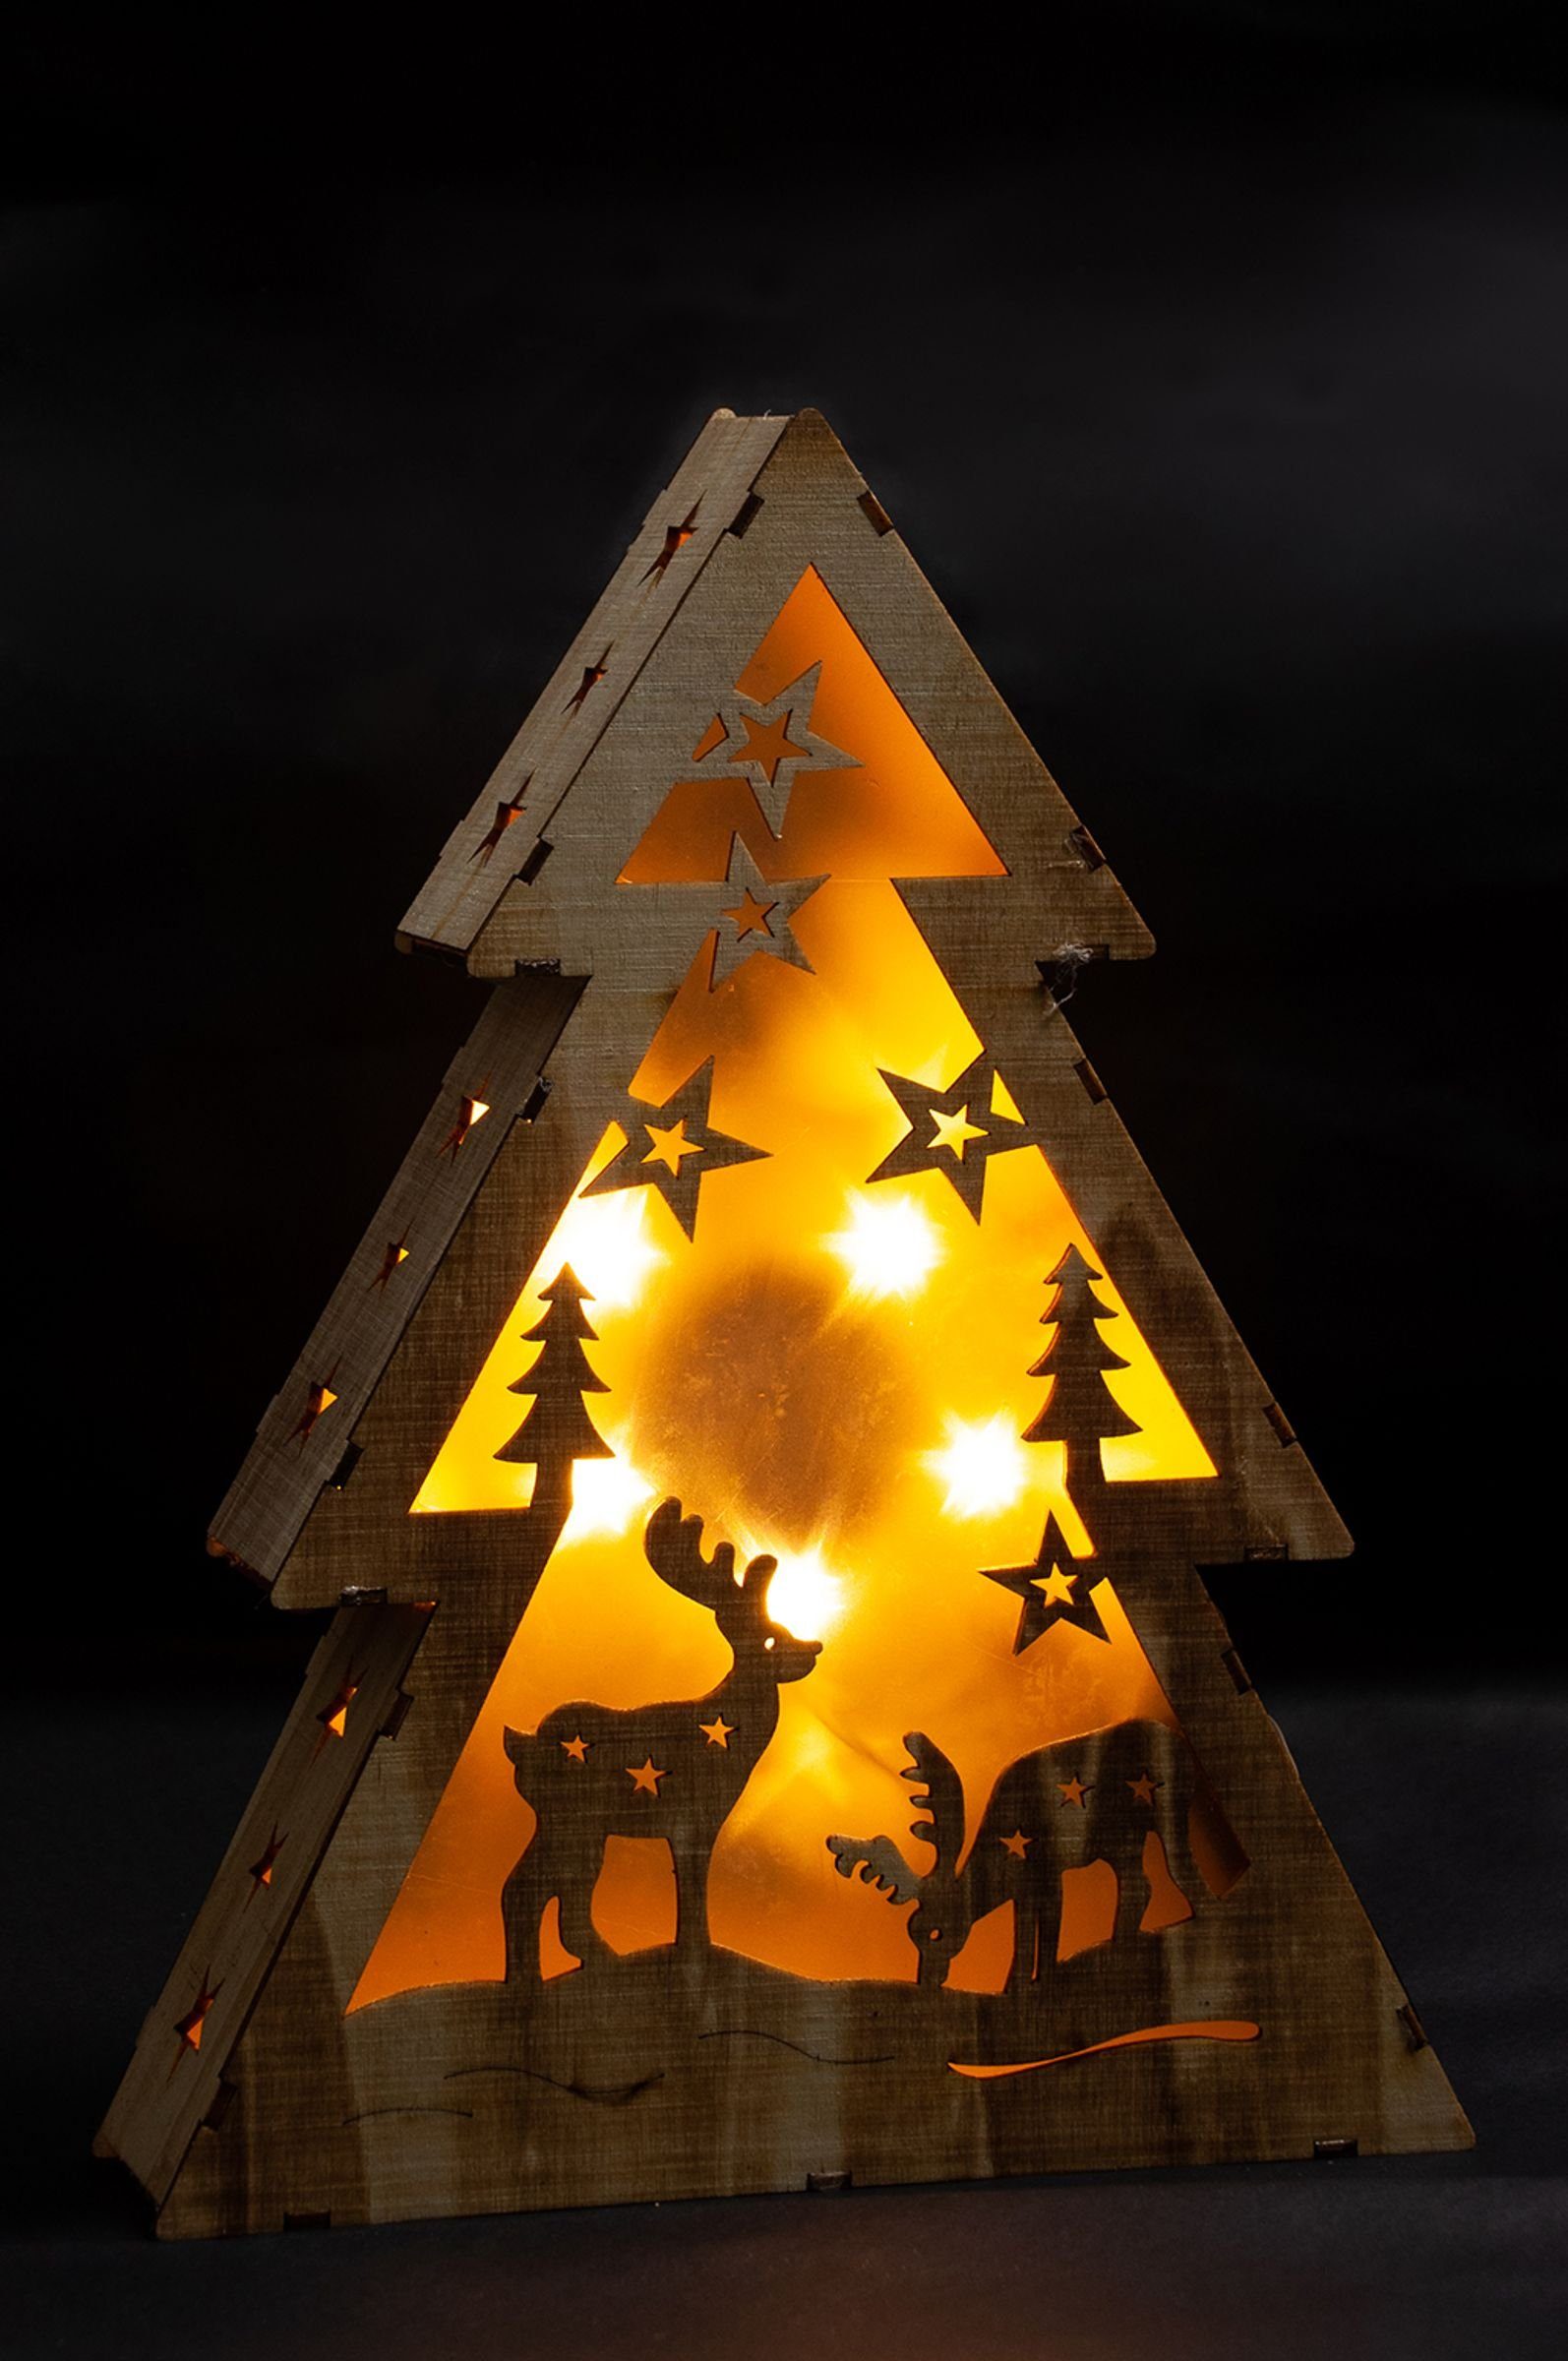 Hölzerner Weihnachtsdeko Gravidus LED Weihnachtsbeleuchtung Weihnachtsbaum Dekobaum